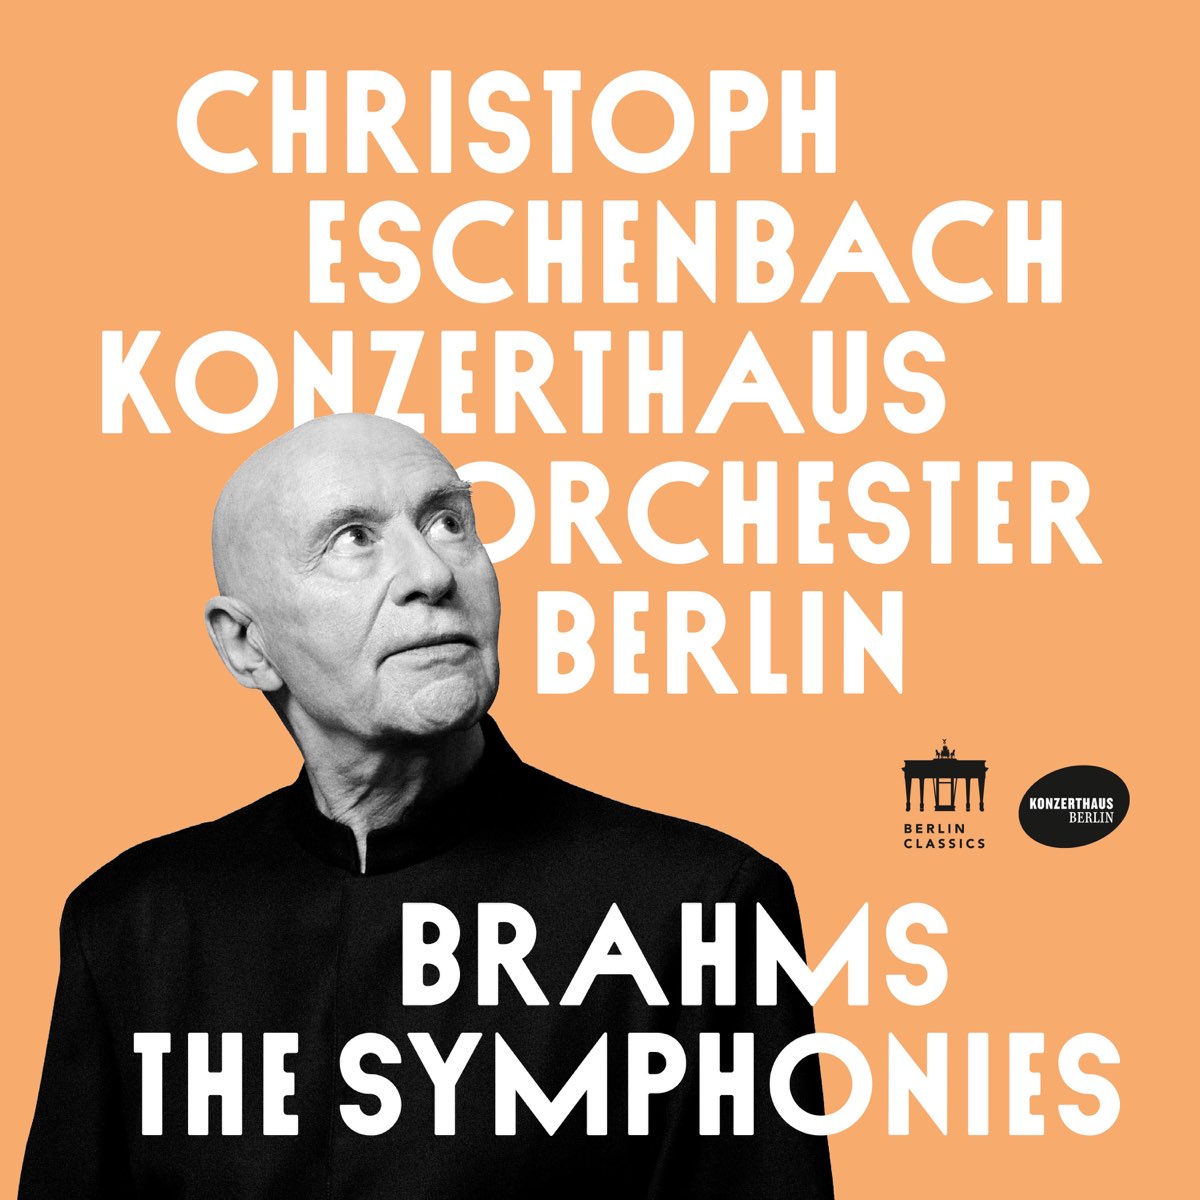 Konzerthausorchester Berlin & Christoph Eschenbach - Brahms: The Symphonies (2021) [FLAC 24bit/96kHz]